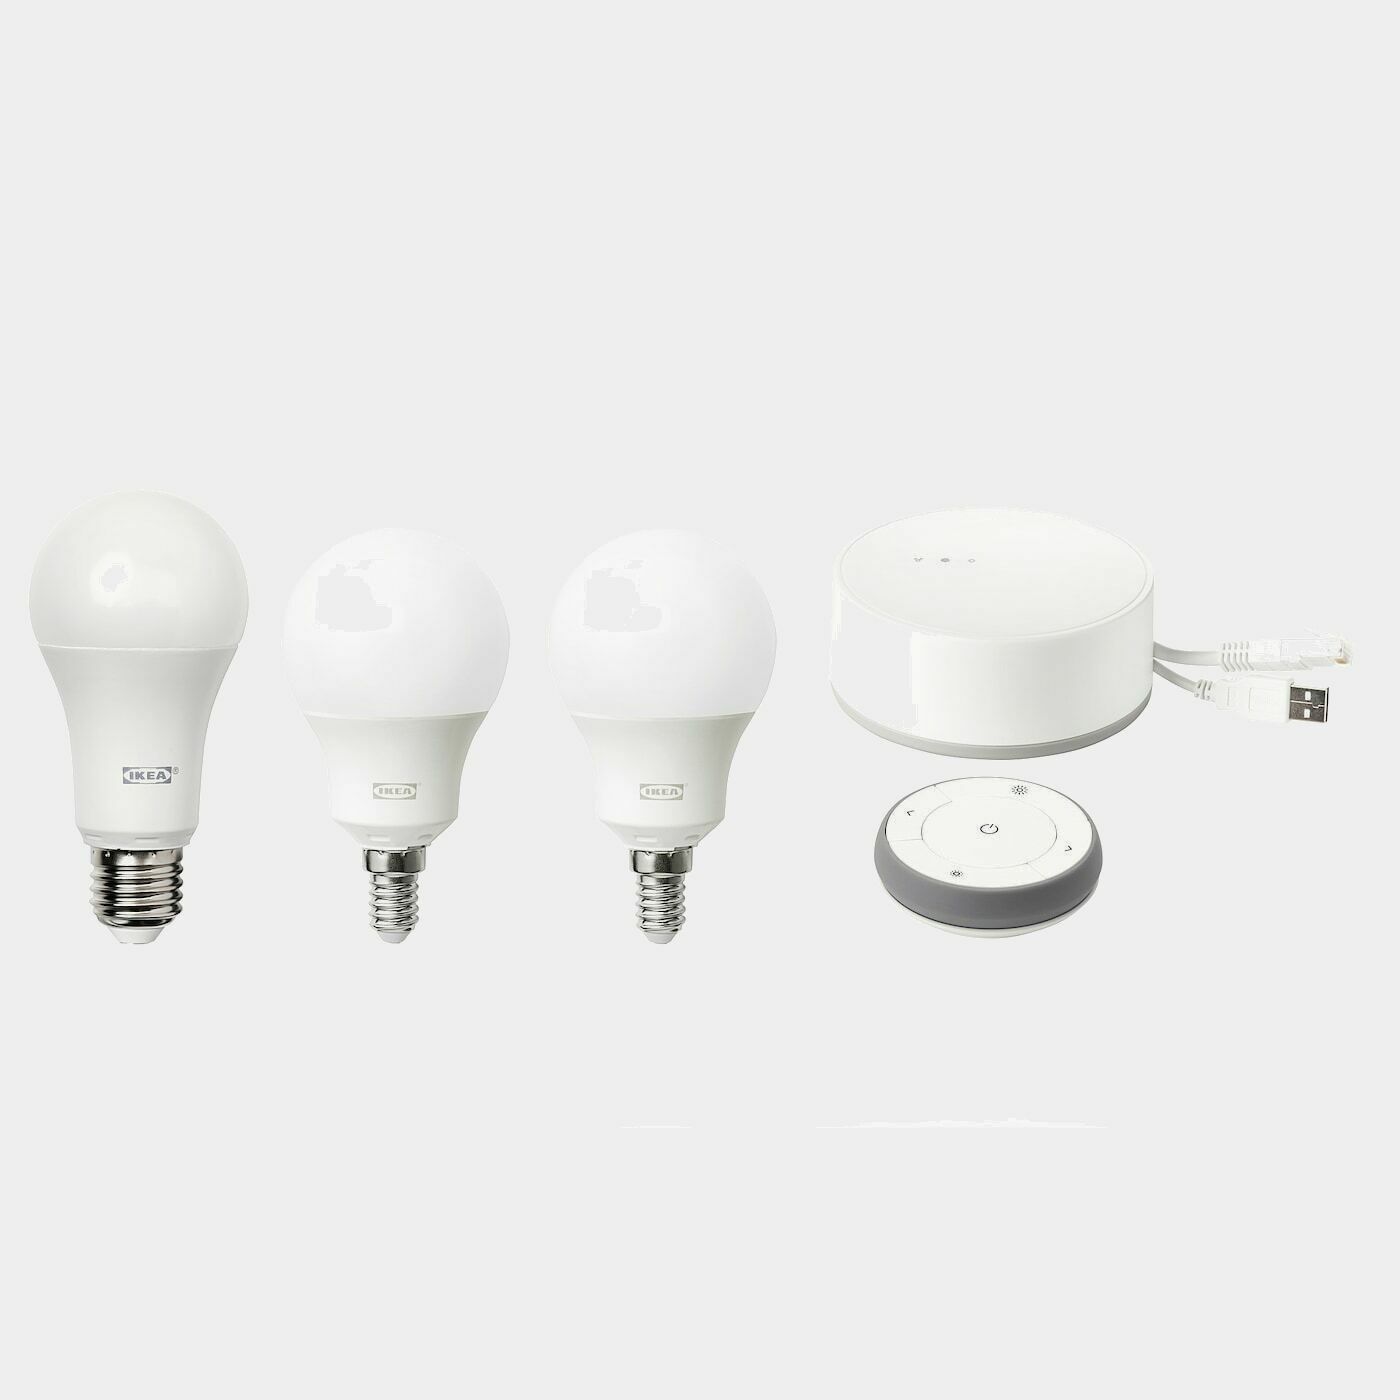 TRÅDFRI Set mit Gateway  - IKEA Smart Home Beleuchtung - Heimelektronik Ideen für dein Zuhause von Home Trends. Heimelektronik Trends von Social Media Influencer für dein Skandi Zuhause.